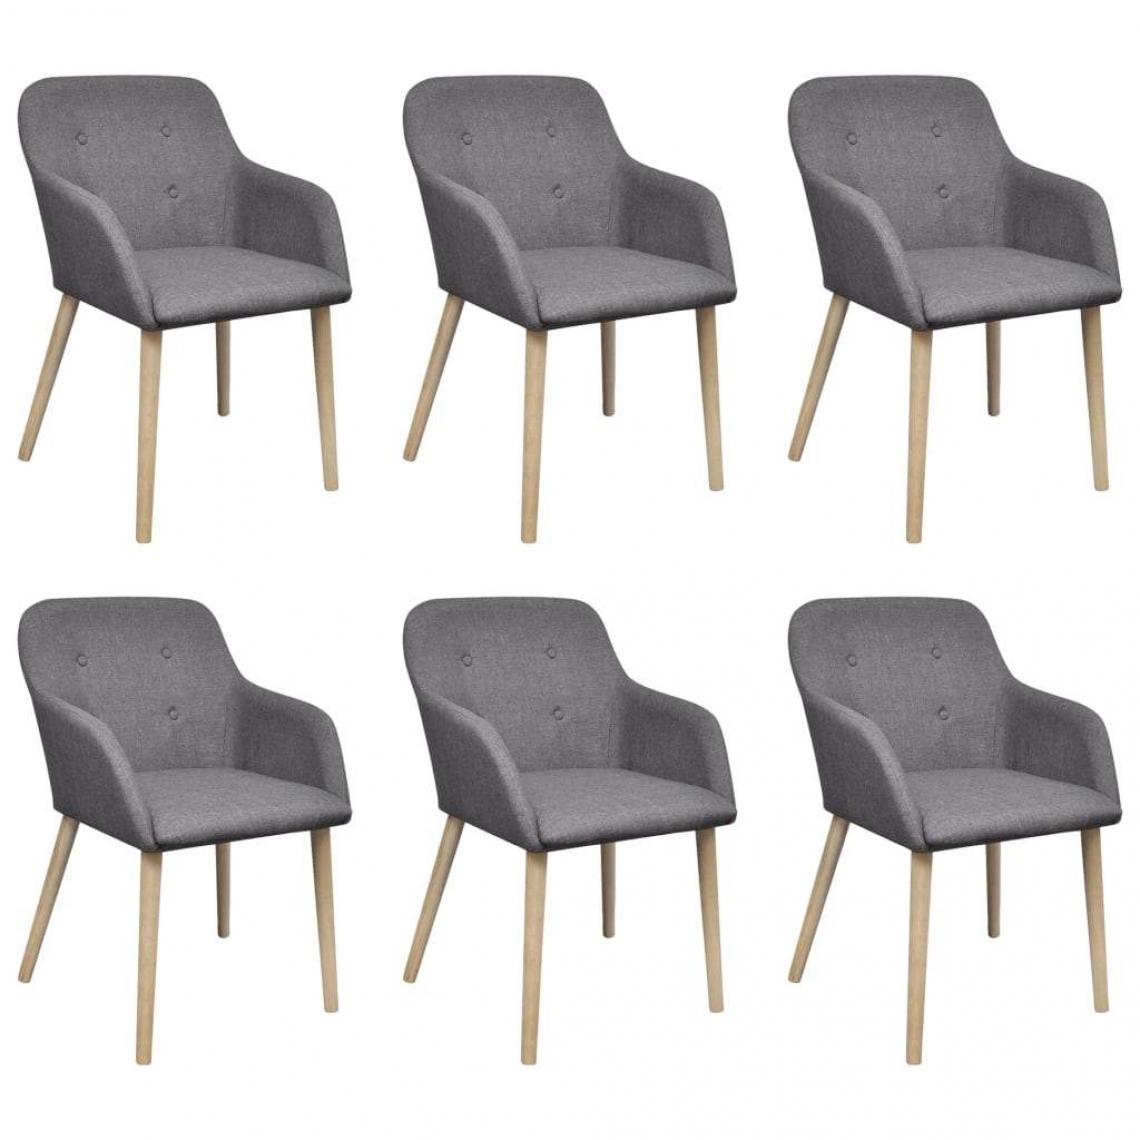 Decoshop26 - Lot de 6 chaises de salle à manger cuisine design moderne tissu gris clair et chêne massif CDS022425 - Chaises